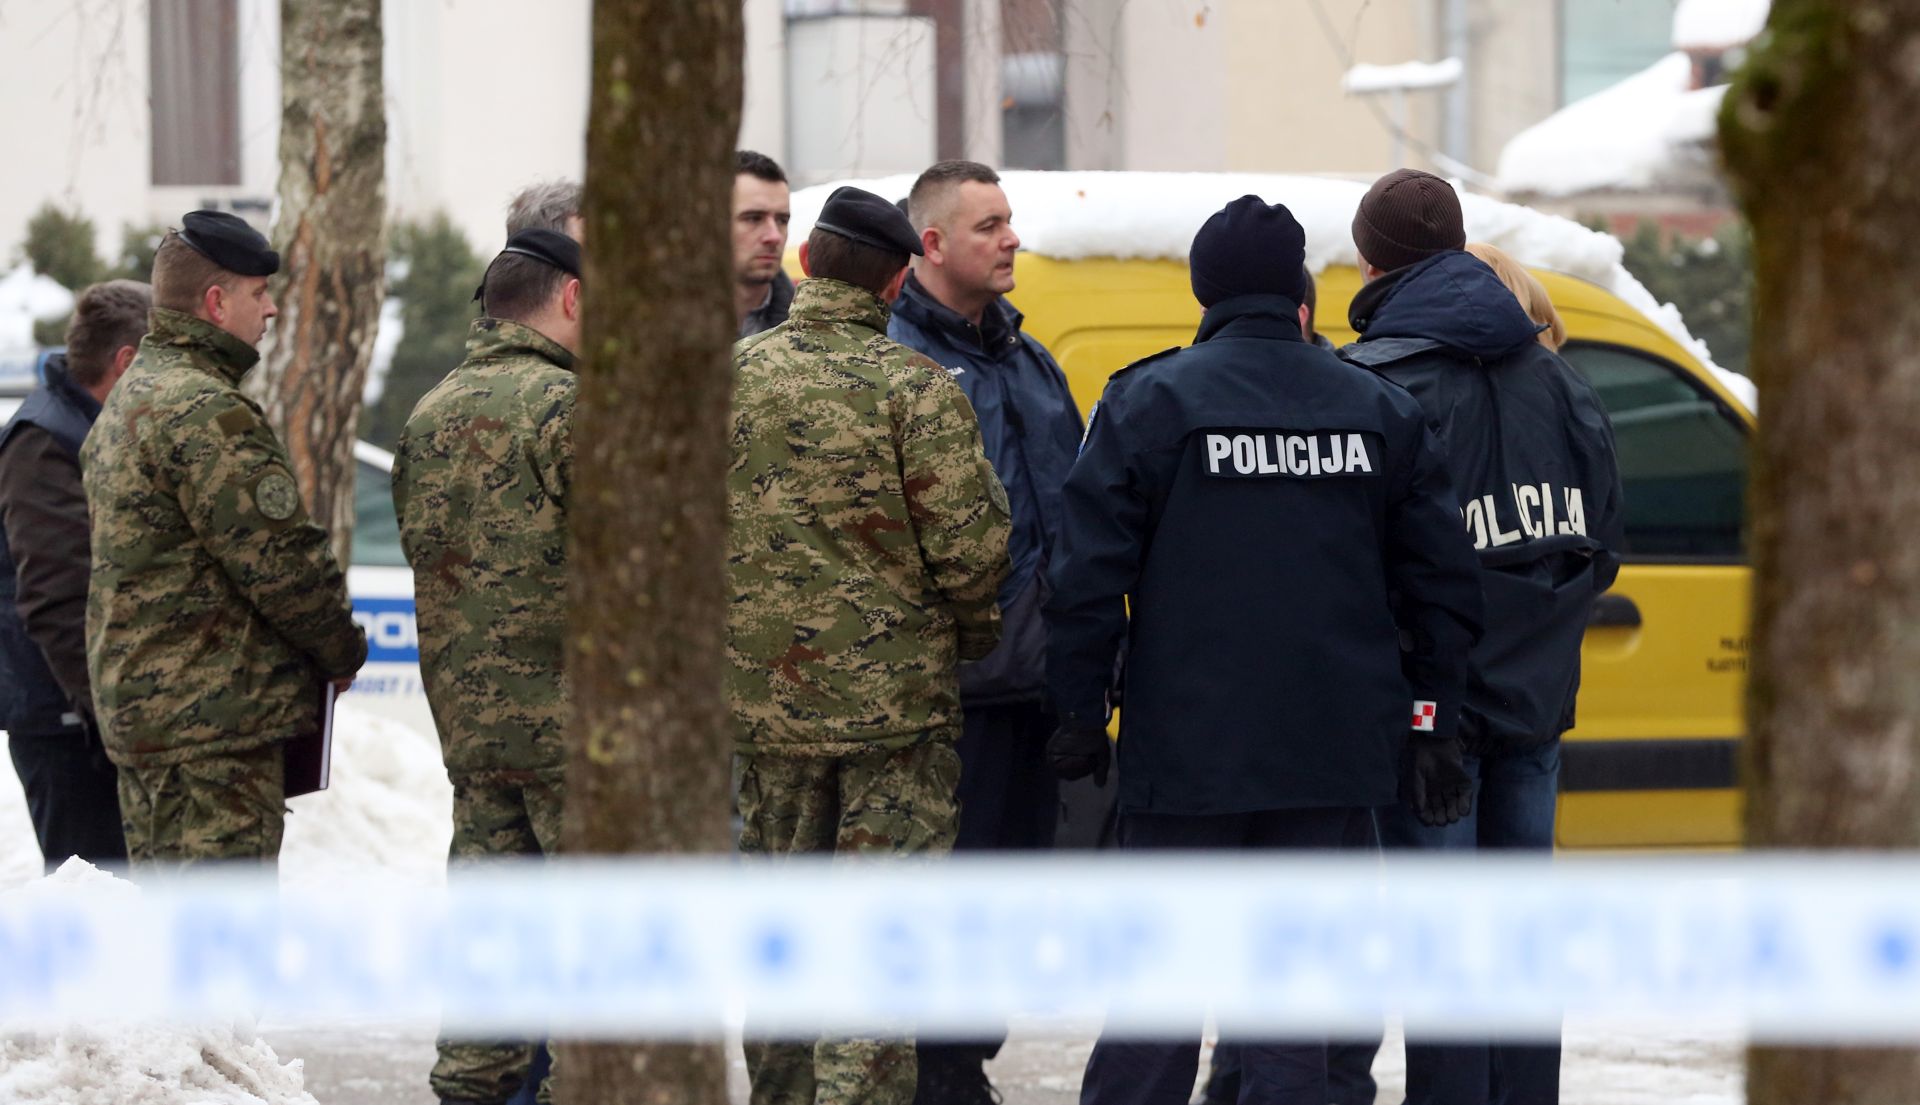 Zagreb, 08.01.2016 - Nepoznati mukarac poèinio je samoubojstvo skoèivi sa zgrade u zagrebaèkom naselju pansko, a u stanu su naðene dvije mrtve osobe, izvijestila je zagrebaèka policija. Samoubojstvo je poèinio jutros u 8,30 sati "skakanjem s visine" u Ulici Milana Reetara br. 44, a u stanu su pronaðene jo dvije mrtve osobe, navodi se u kratkom priopæenju zagrebaèke Policijske uprave.
foto HINA/ Damir SENÈAR /ds